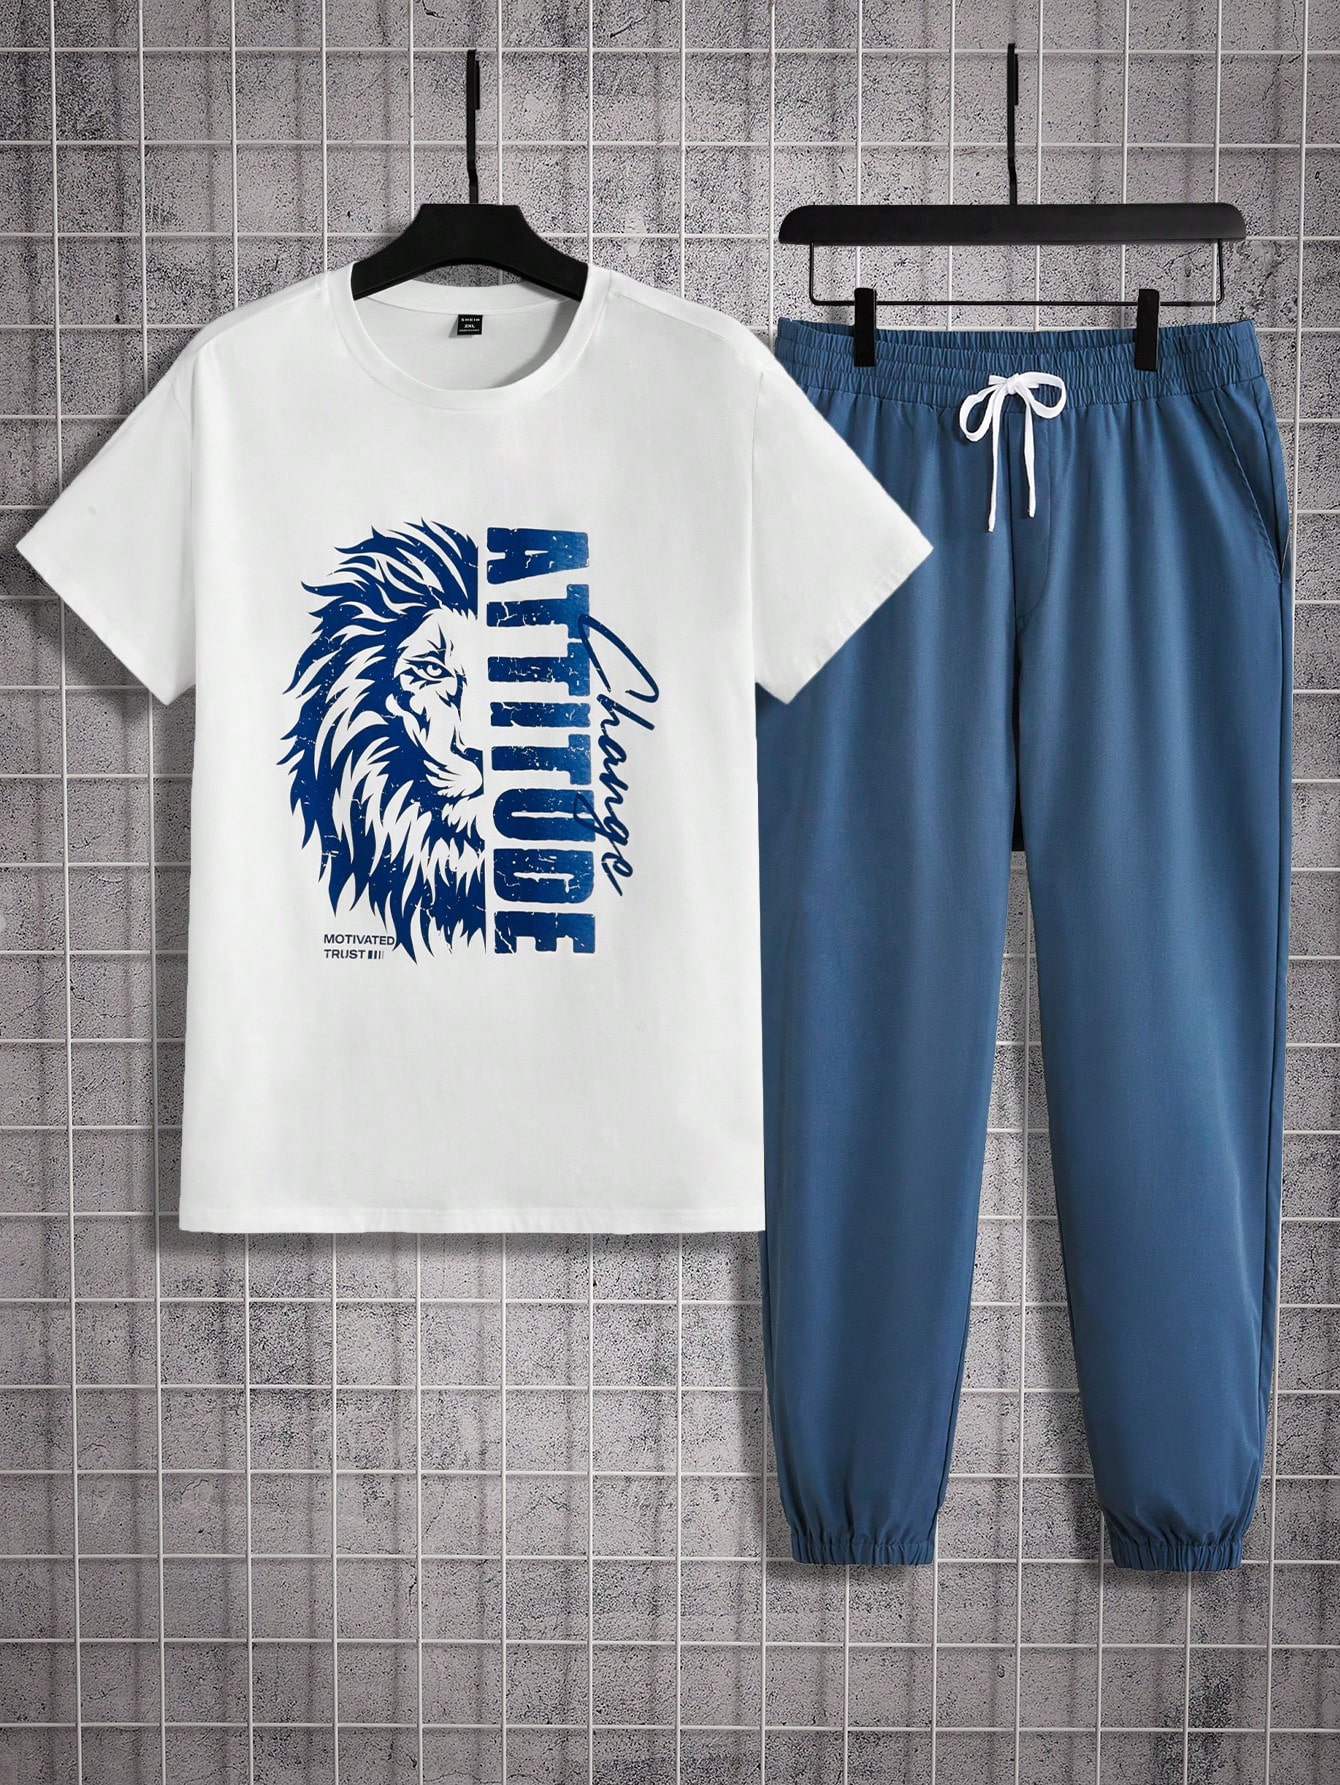 цена Мужская футболка и спортивные штаны с короткими рукавами и принтом льва и букв Manfinity Homme больших размеров, синий и белый